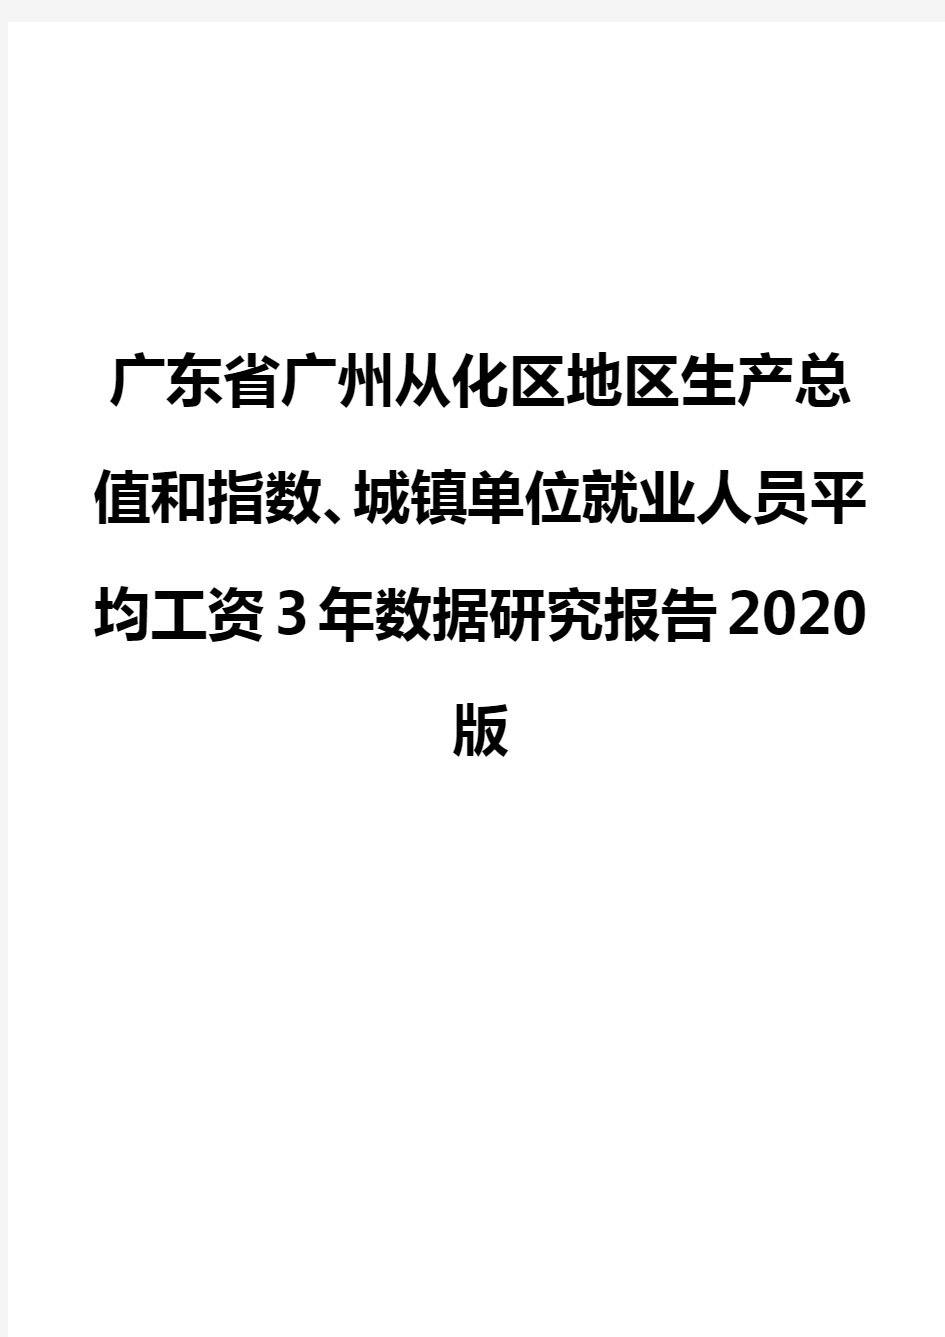 广东省广州从化区地区生产总值和指数、城镇单位就业人员平均工资3年数据研究报告2020版